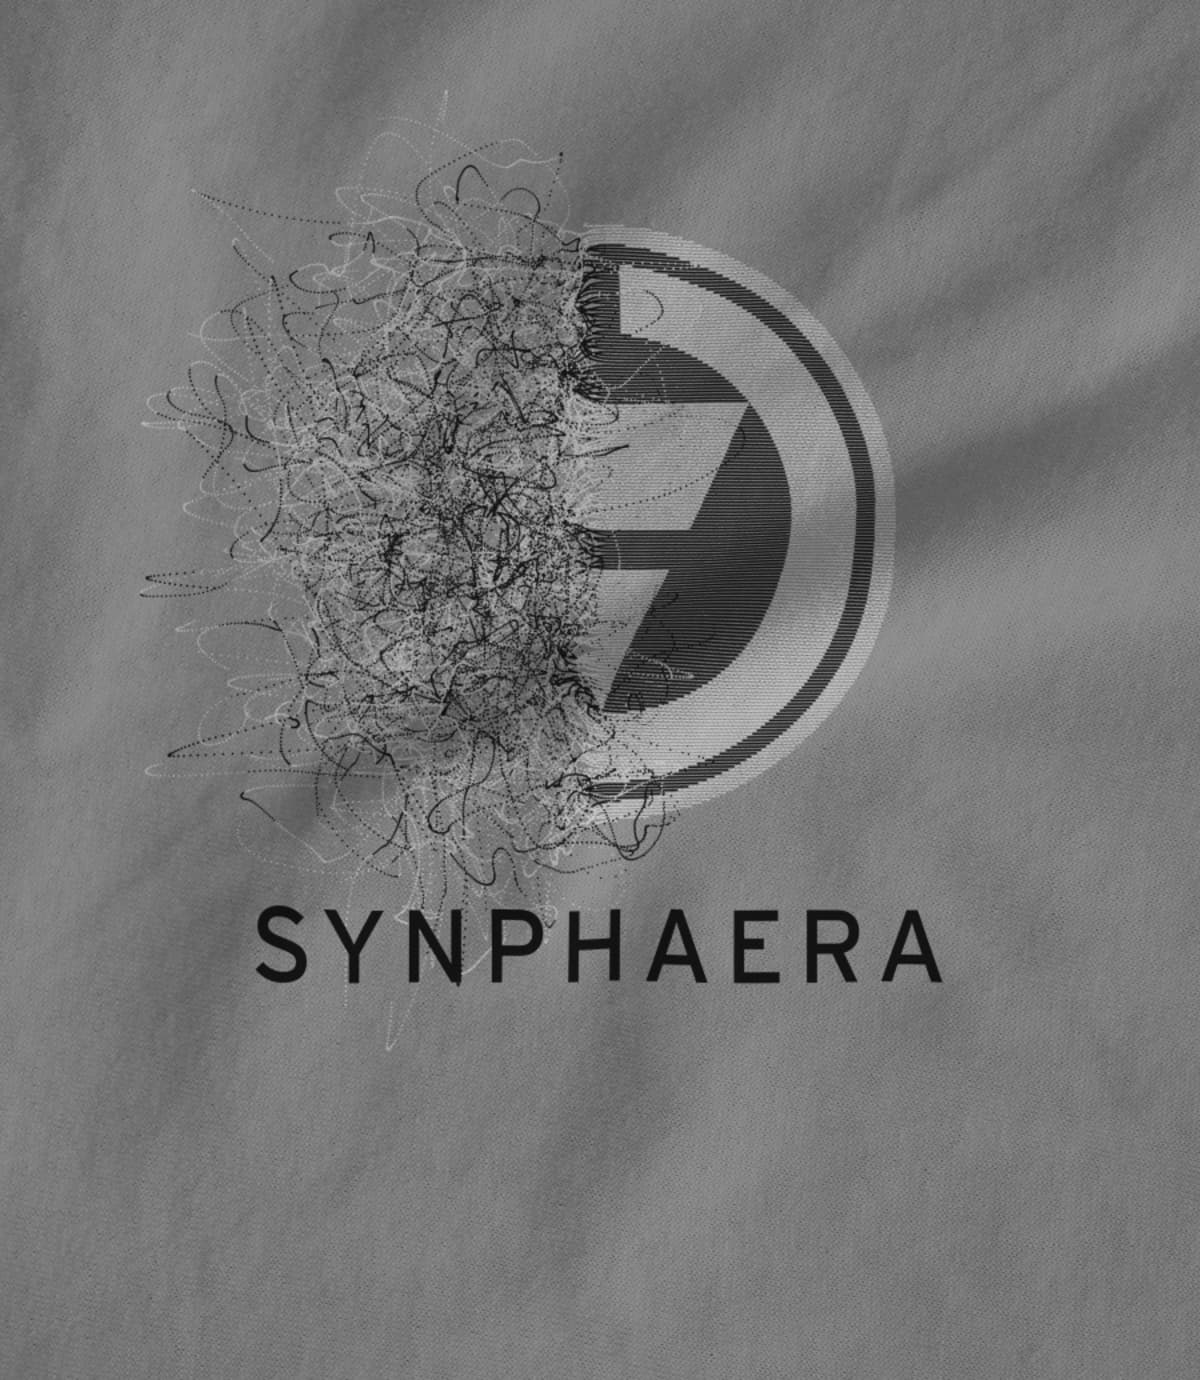 Synphaera synphaera new design 7 1521850170